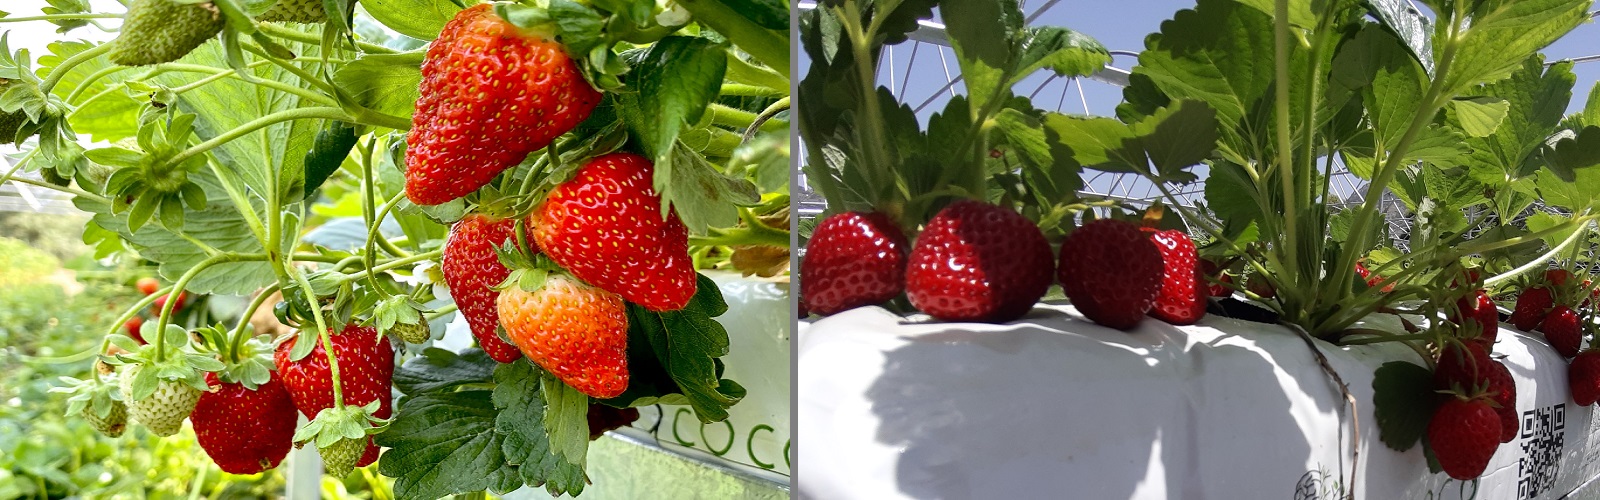 Αεροποινική καλλιέργεια φράουλας